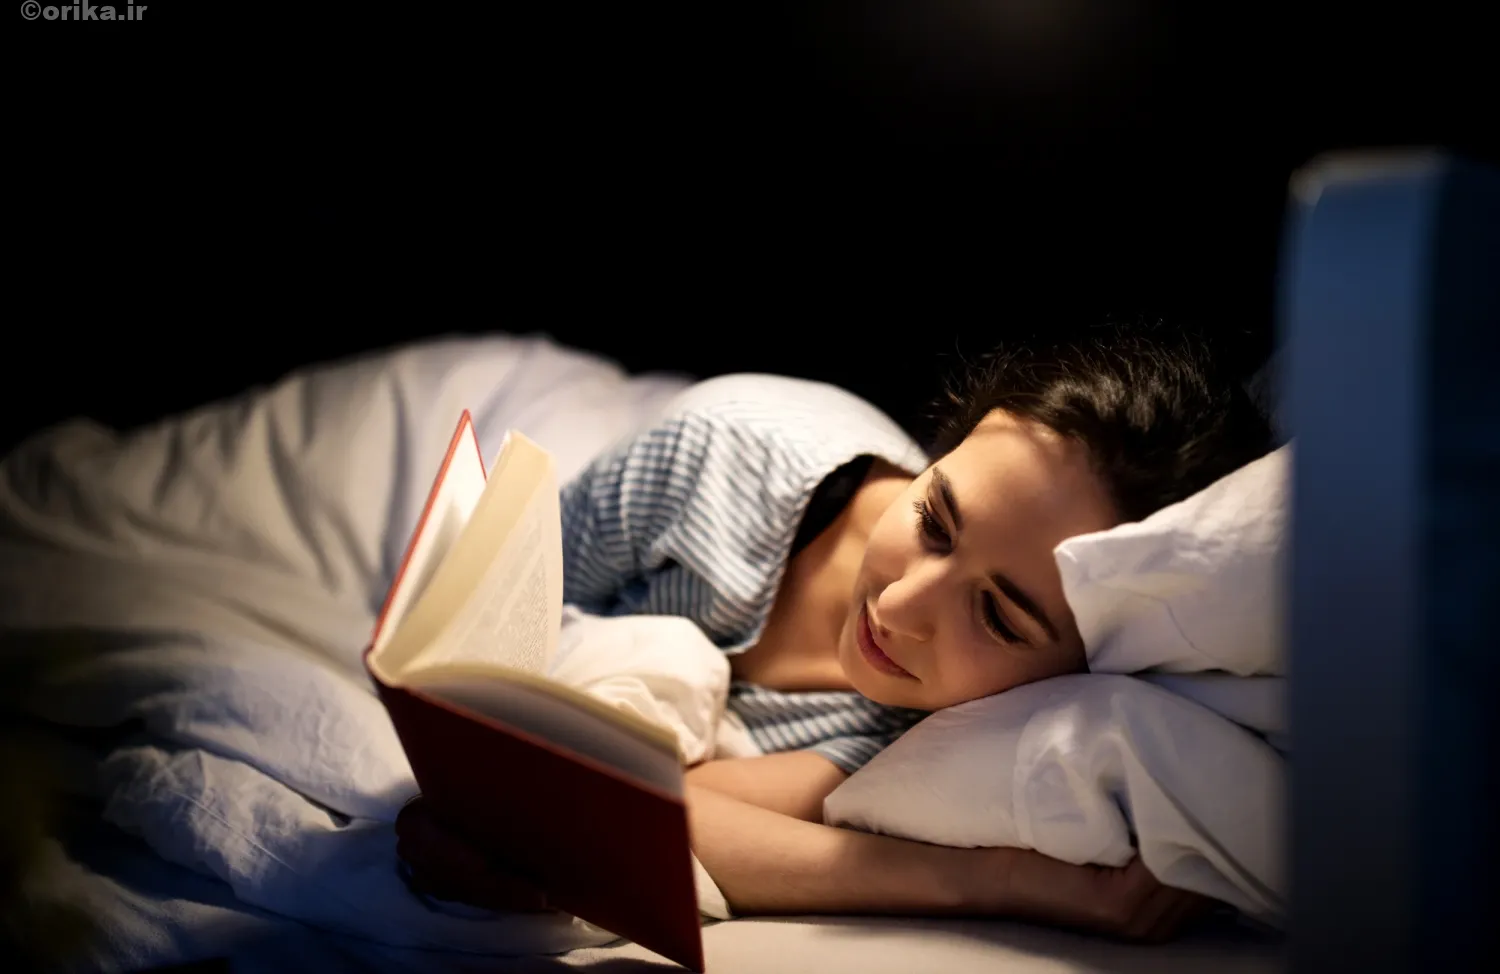 قبل از خواب کتاب بخوانید